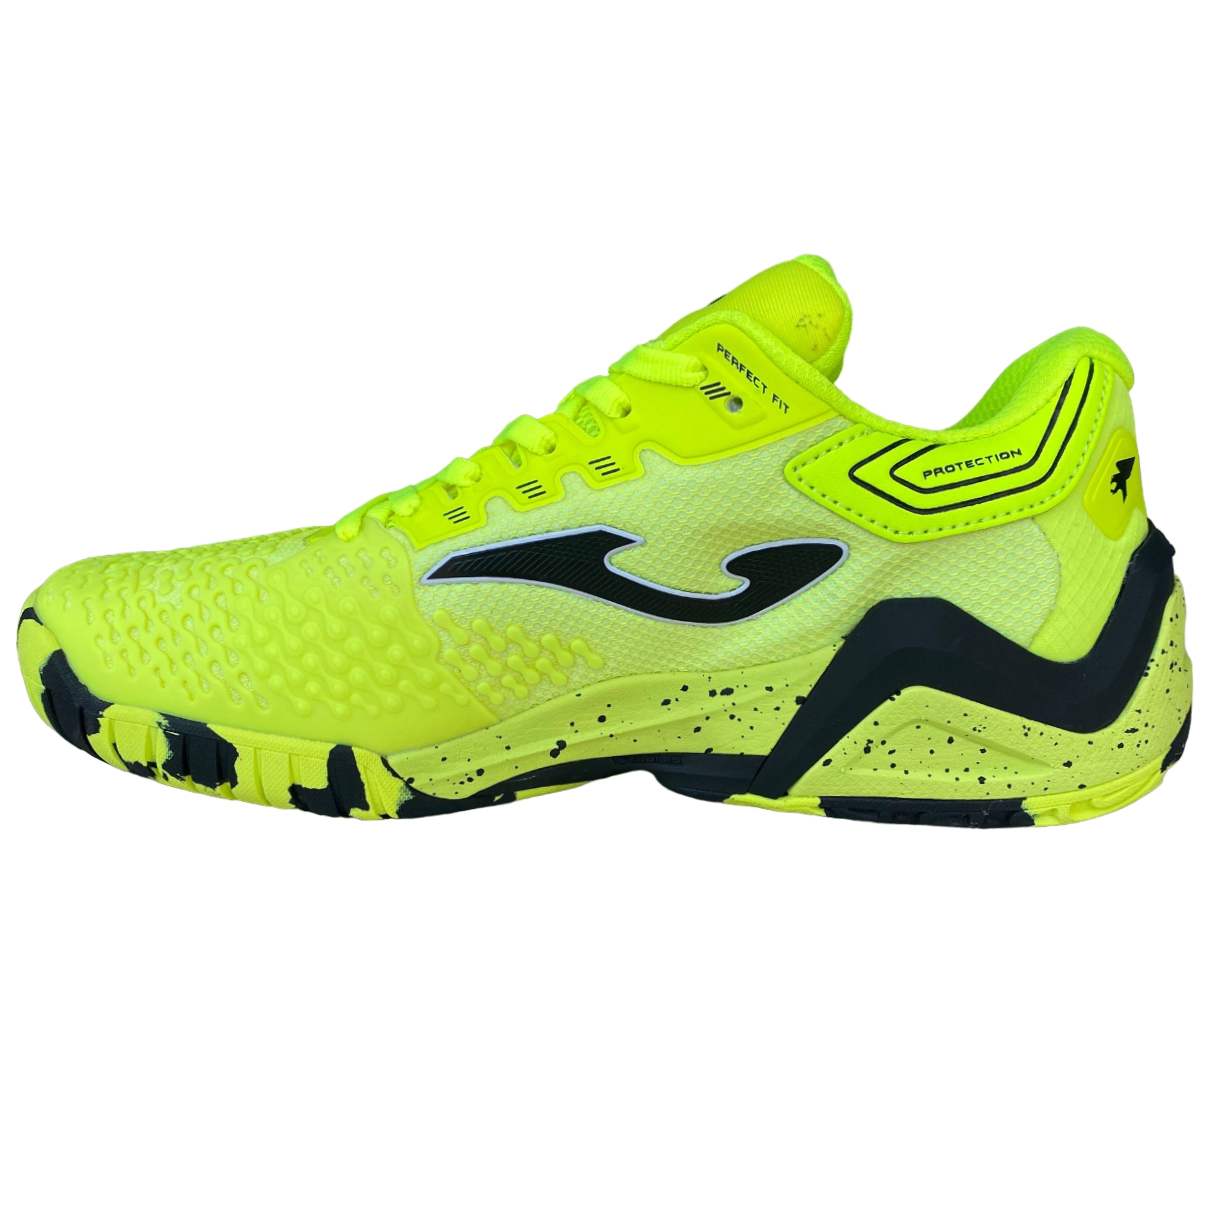 Joma scarpa da tennis da uomo ammortizzata e protettiva Ace Men 2309 giallo limone